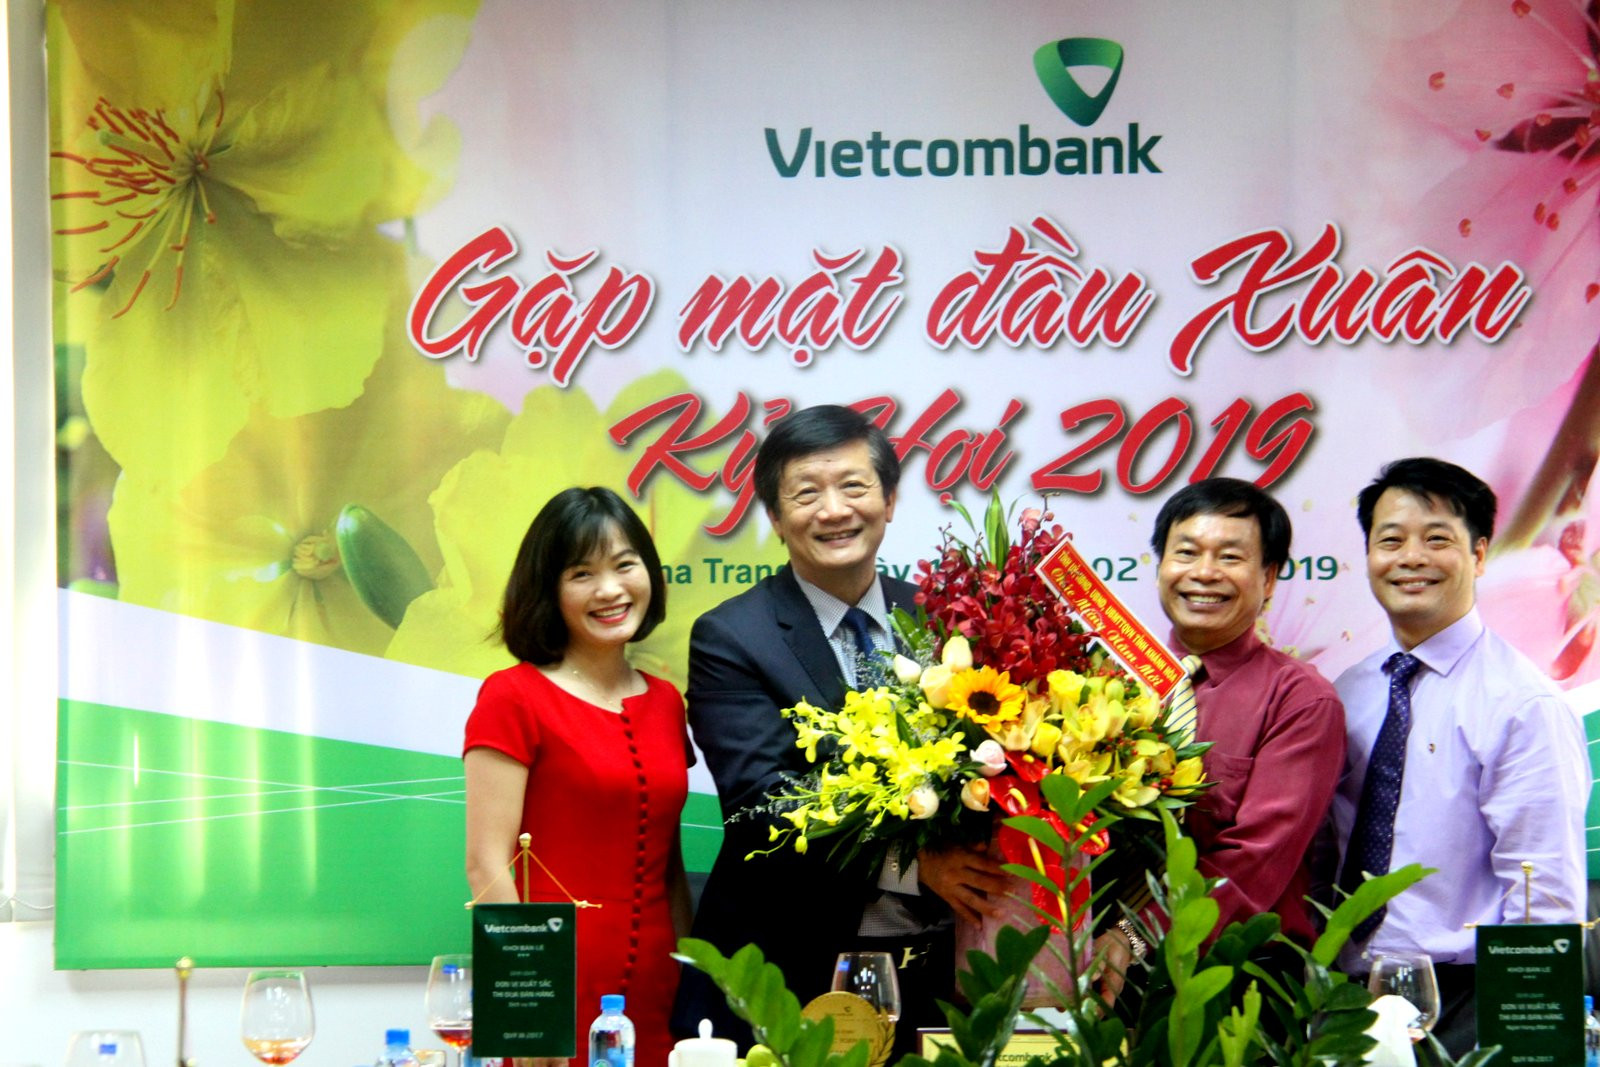  Ông Trâng Sơn Hải tặng hoa cho tập thể cán bộ, nhân viên Vietcombank chi nhánh Khánh Hòa